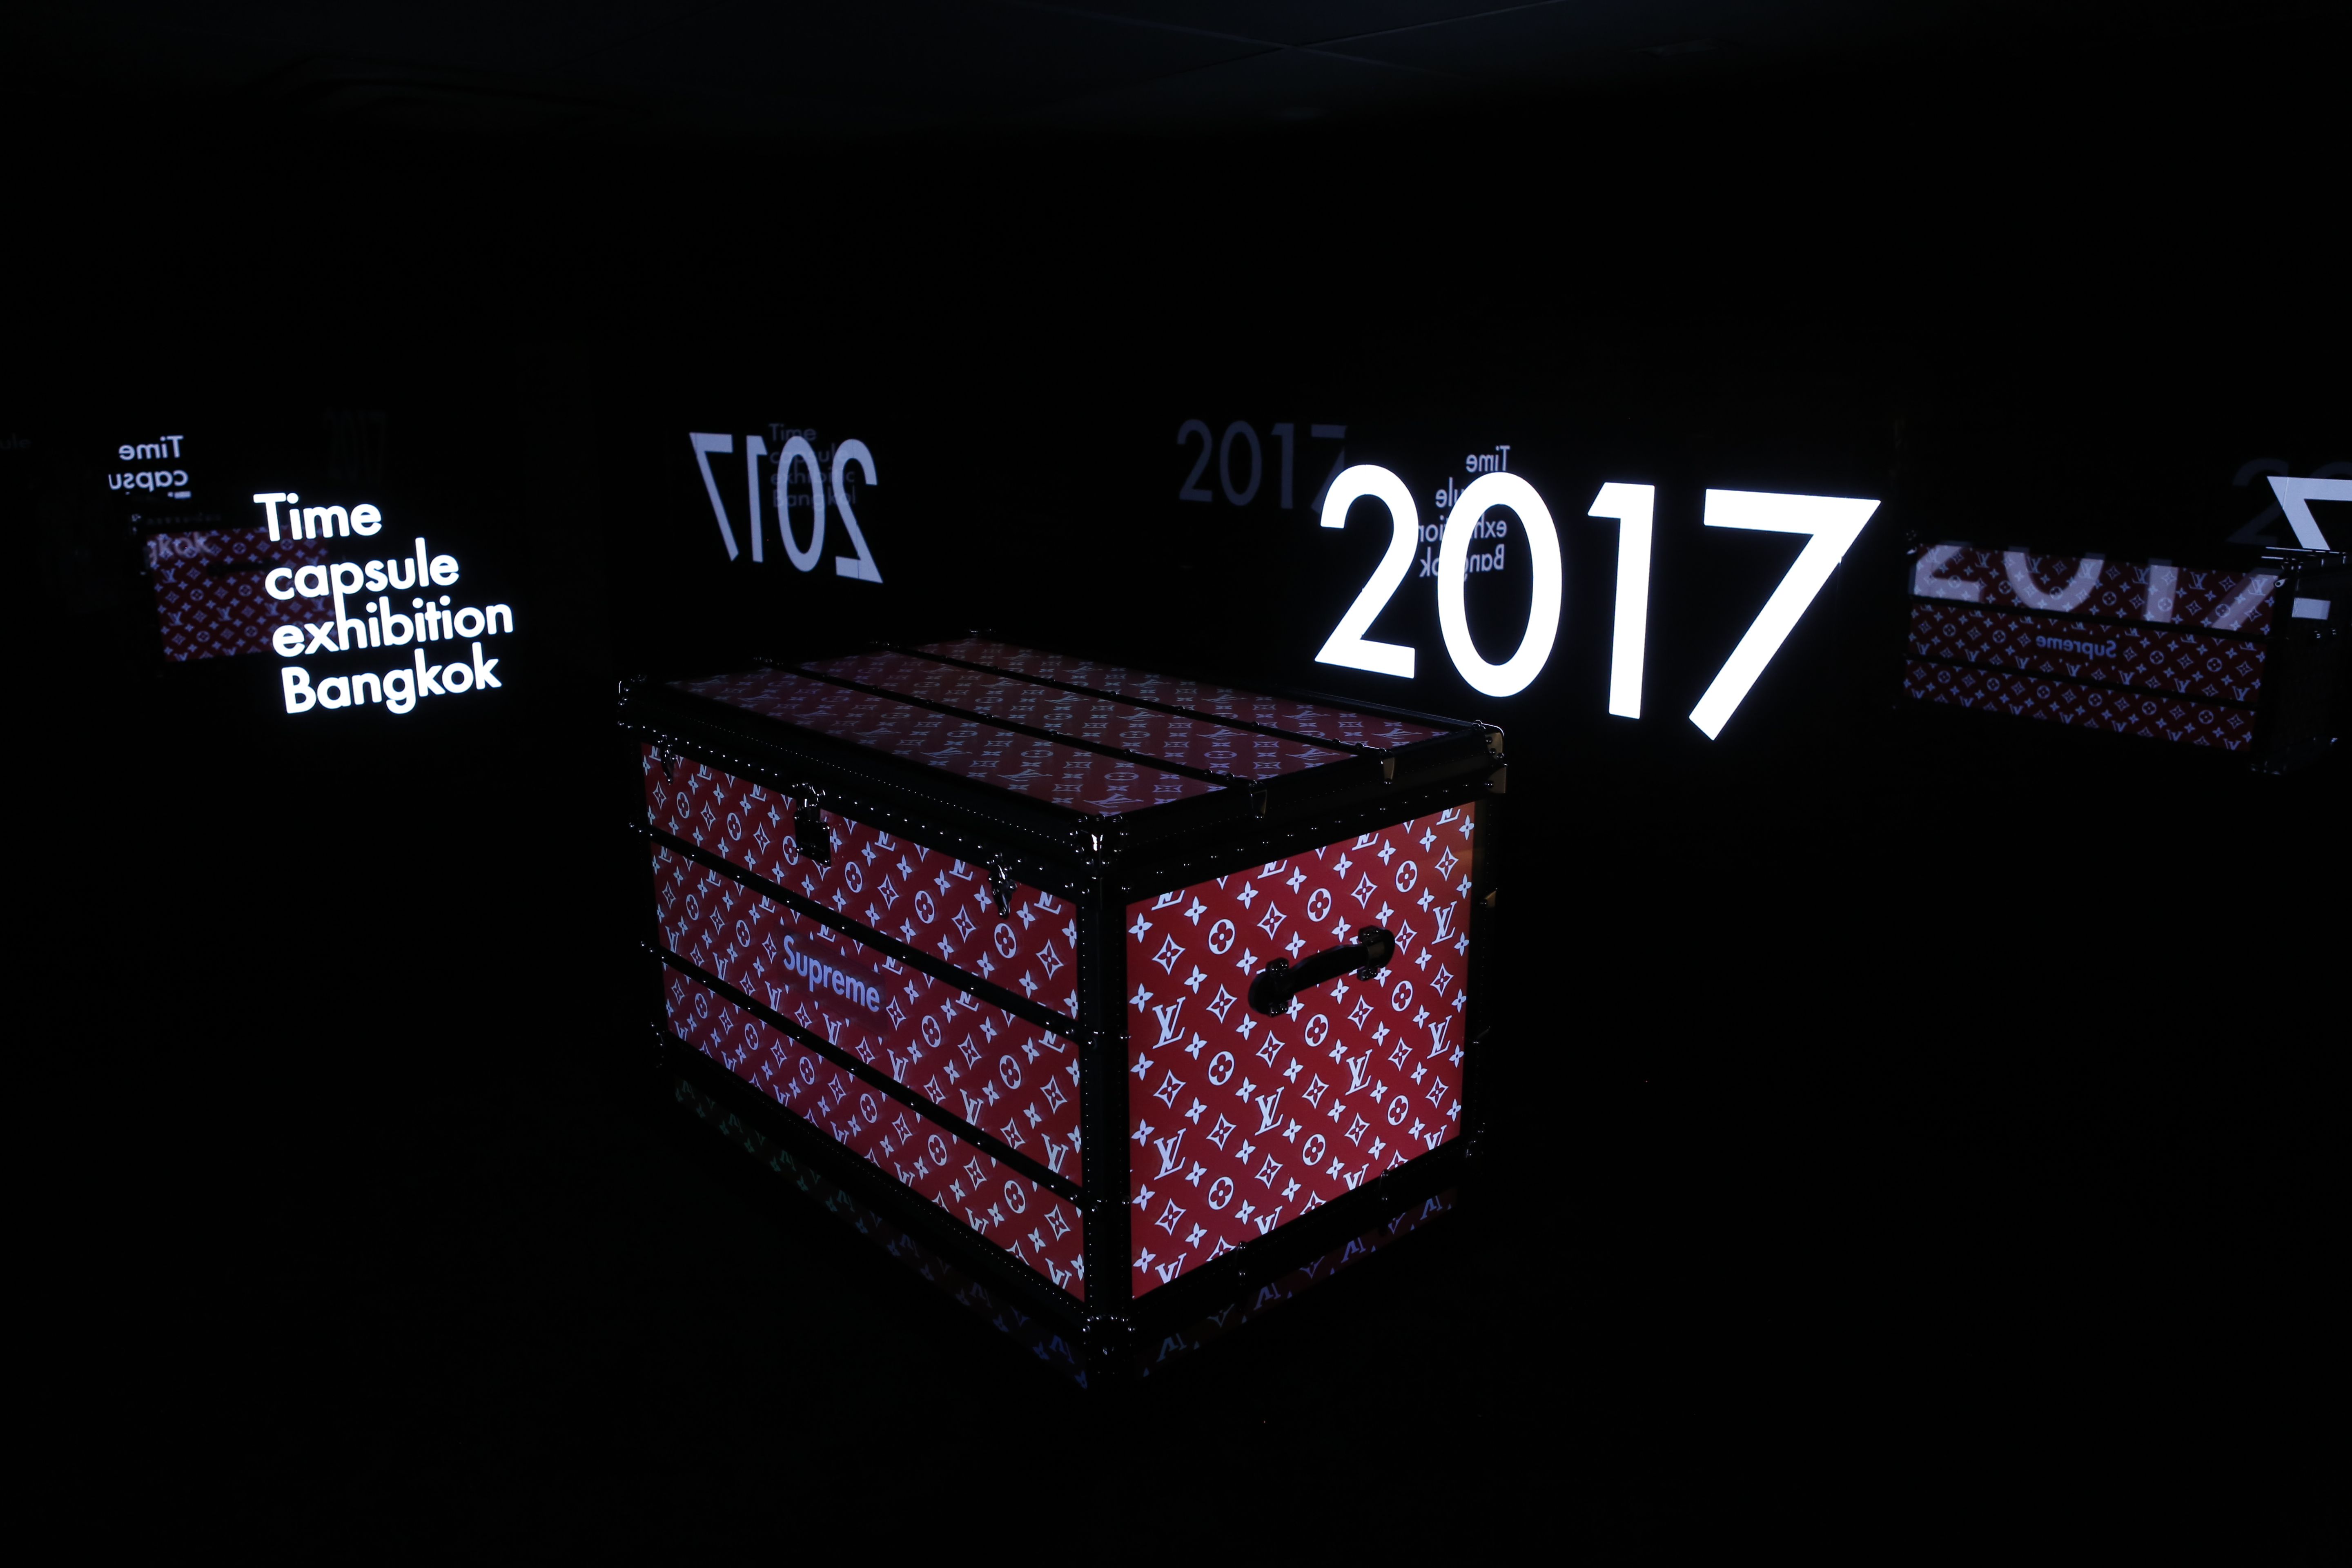  LOUIS VUITTON TIME CAPSULE BANGKOK EXHIBITION 2017